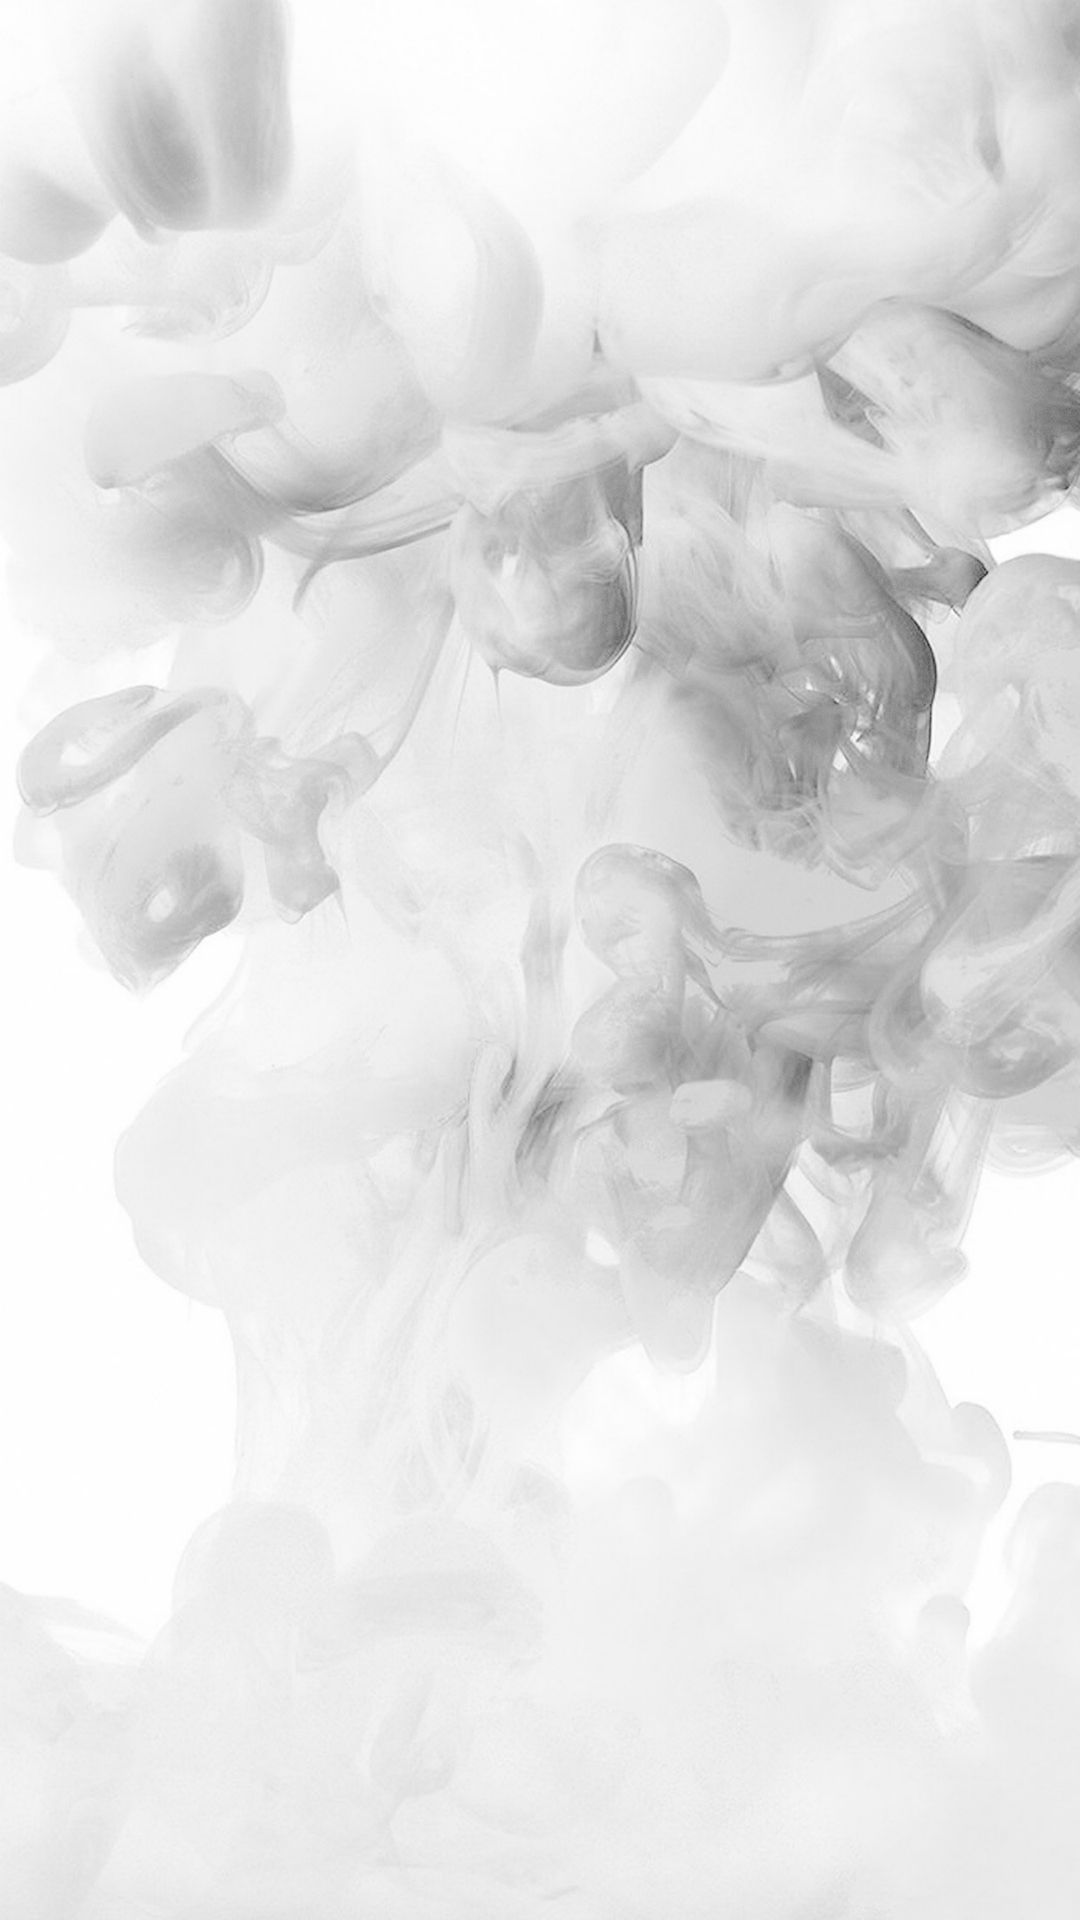 Smoke White Abstract Fog Art Illust iPhone 6 wallpaper | fog ...